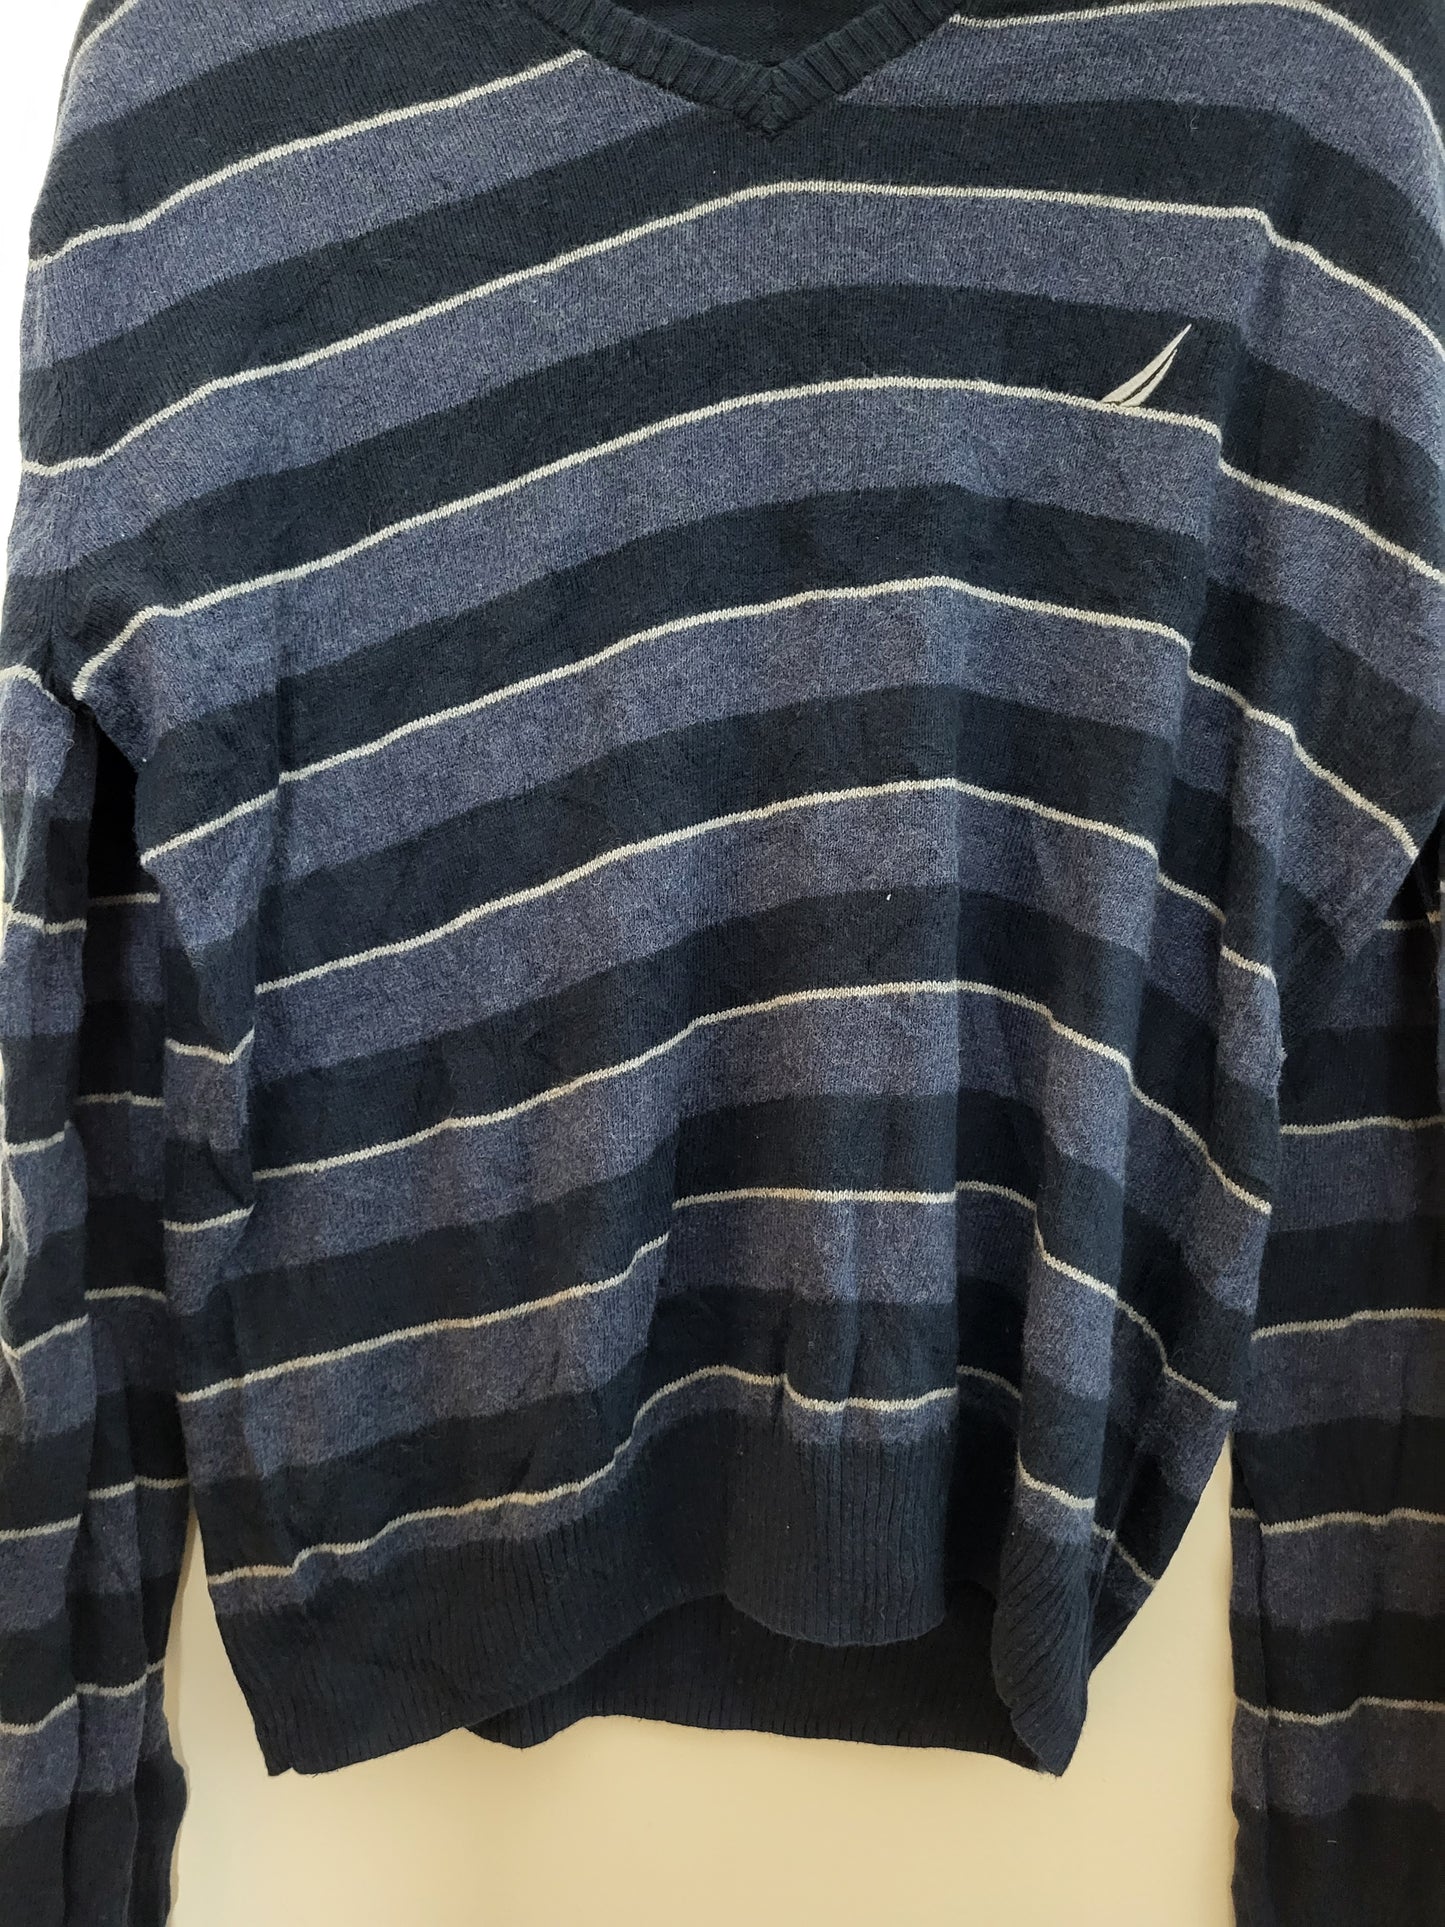 Vintage NAUTICA  - Pullover - Streifen - Bunt - Herren - S